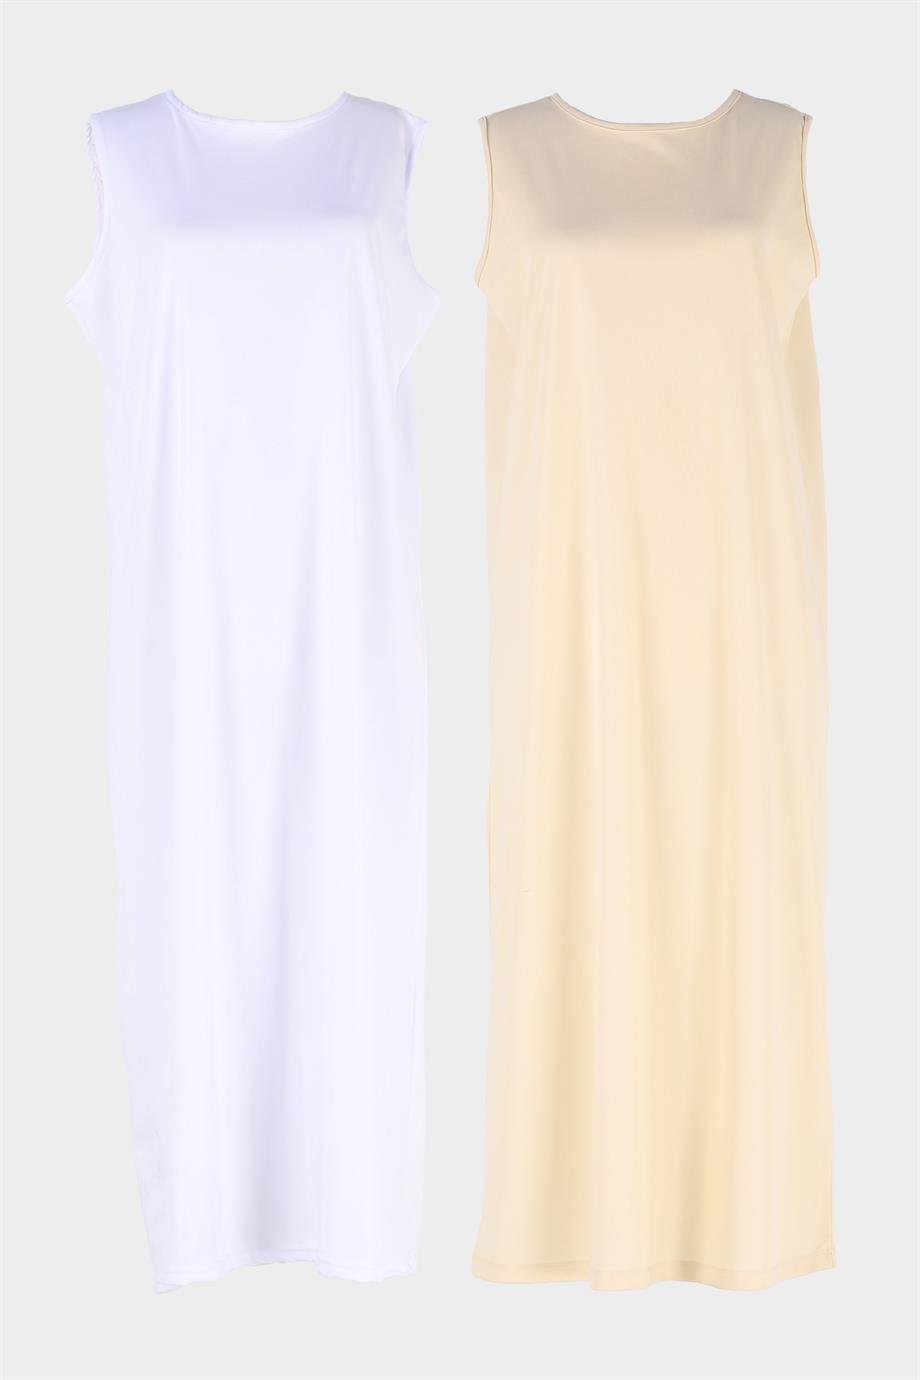 Beyaz-Ten 2'li Paket Kolsuz Elbise Astarı İçlik Jüpon